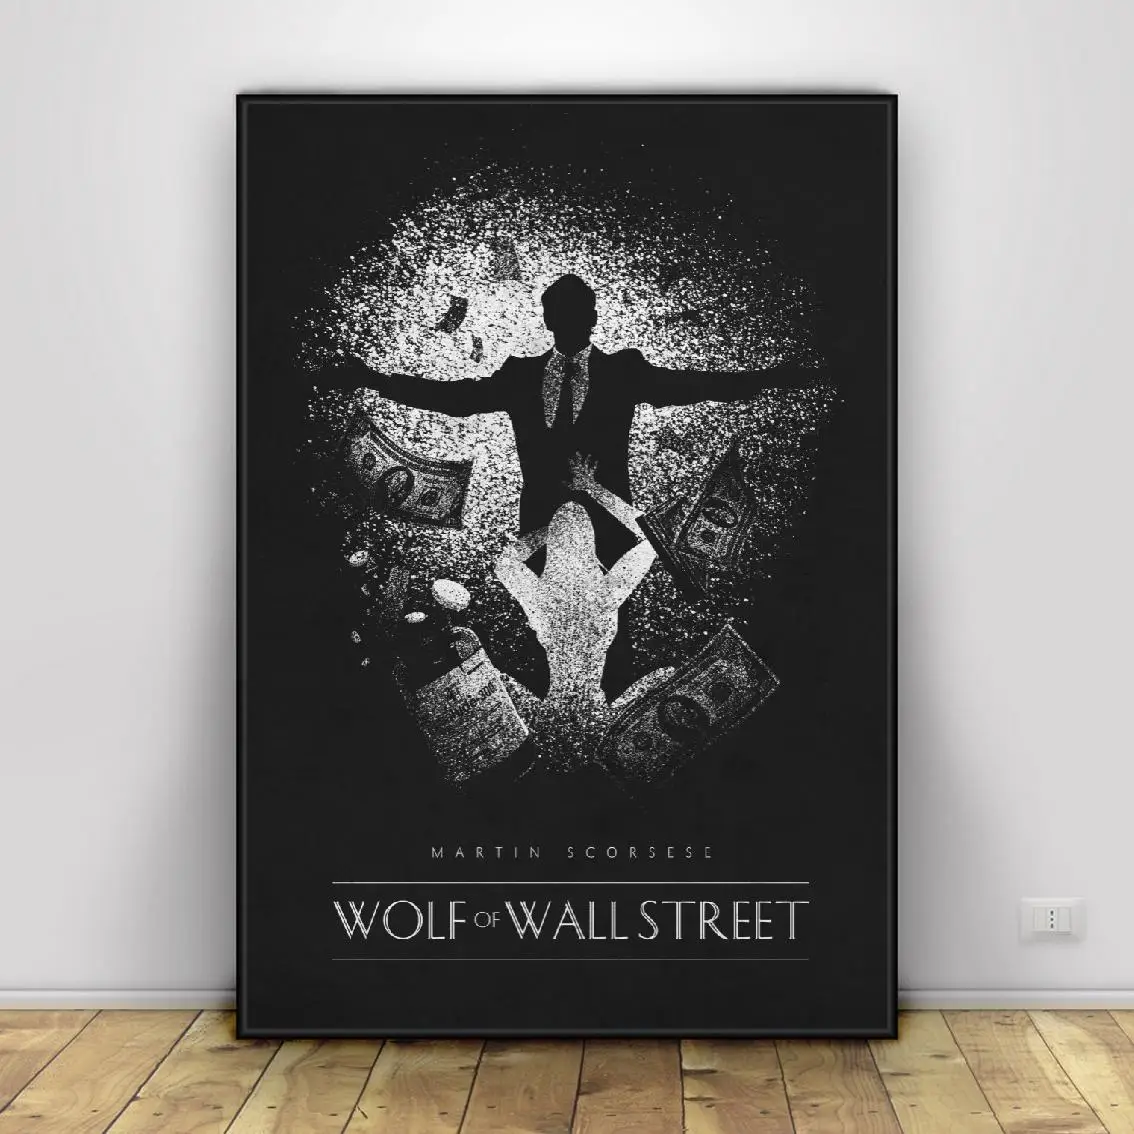 Poster 30 x 20 cm Stampa Artistica Professionale Nuovo Poster Artistico Wall Street di Editors Choice